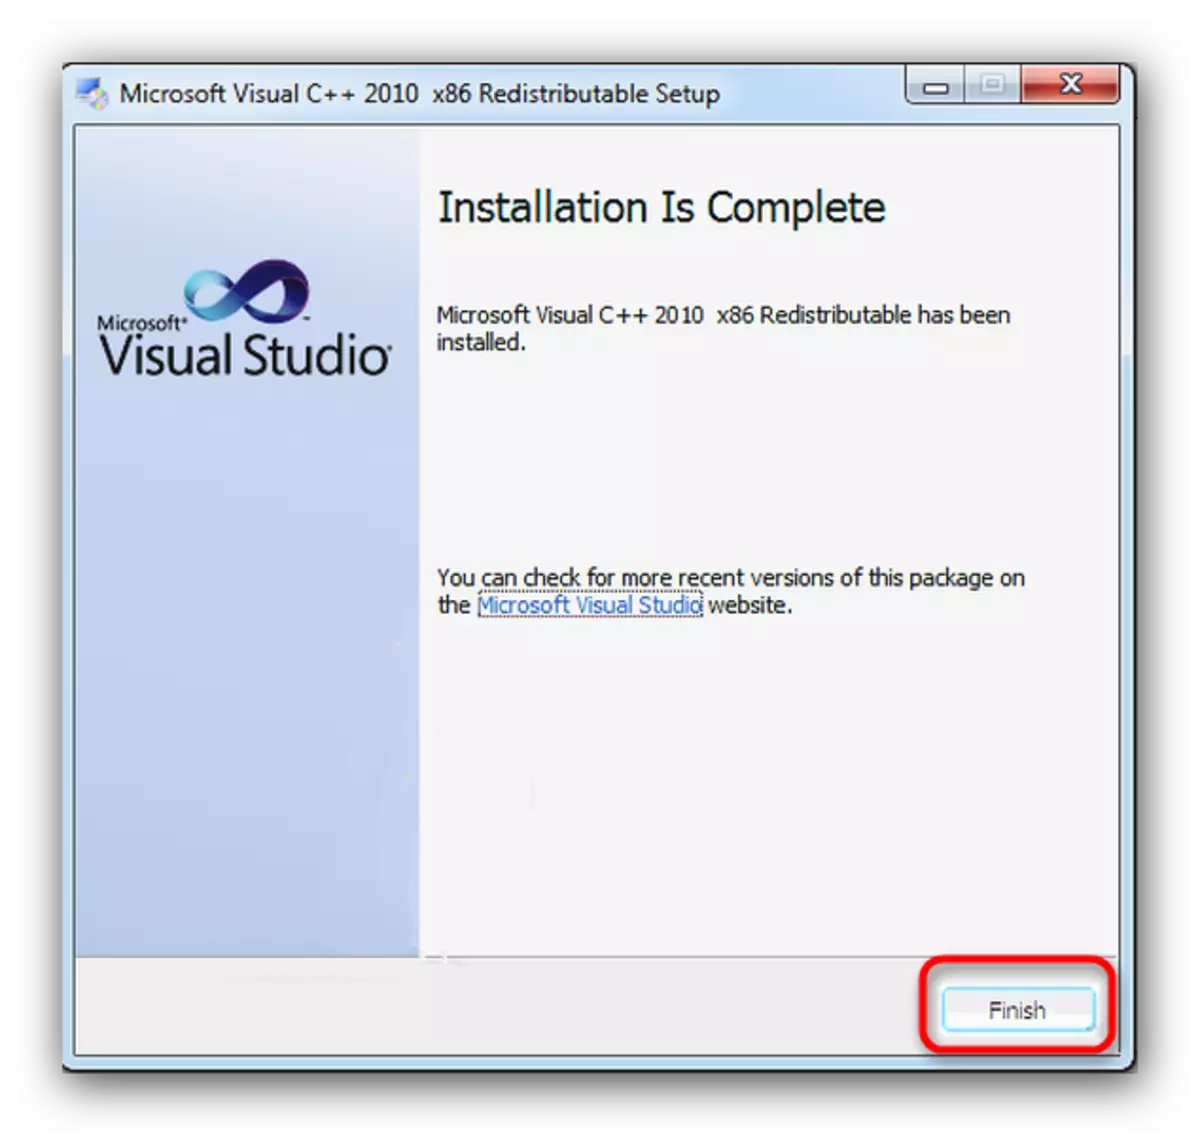 Τελειώστε την εγκατάσταση του Microsoft Visual C ++ 2010 Redistributable